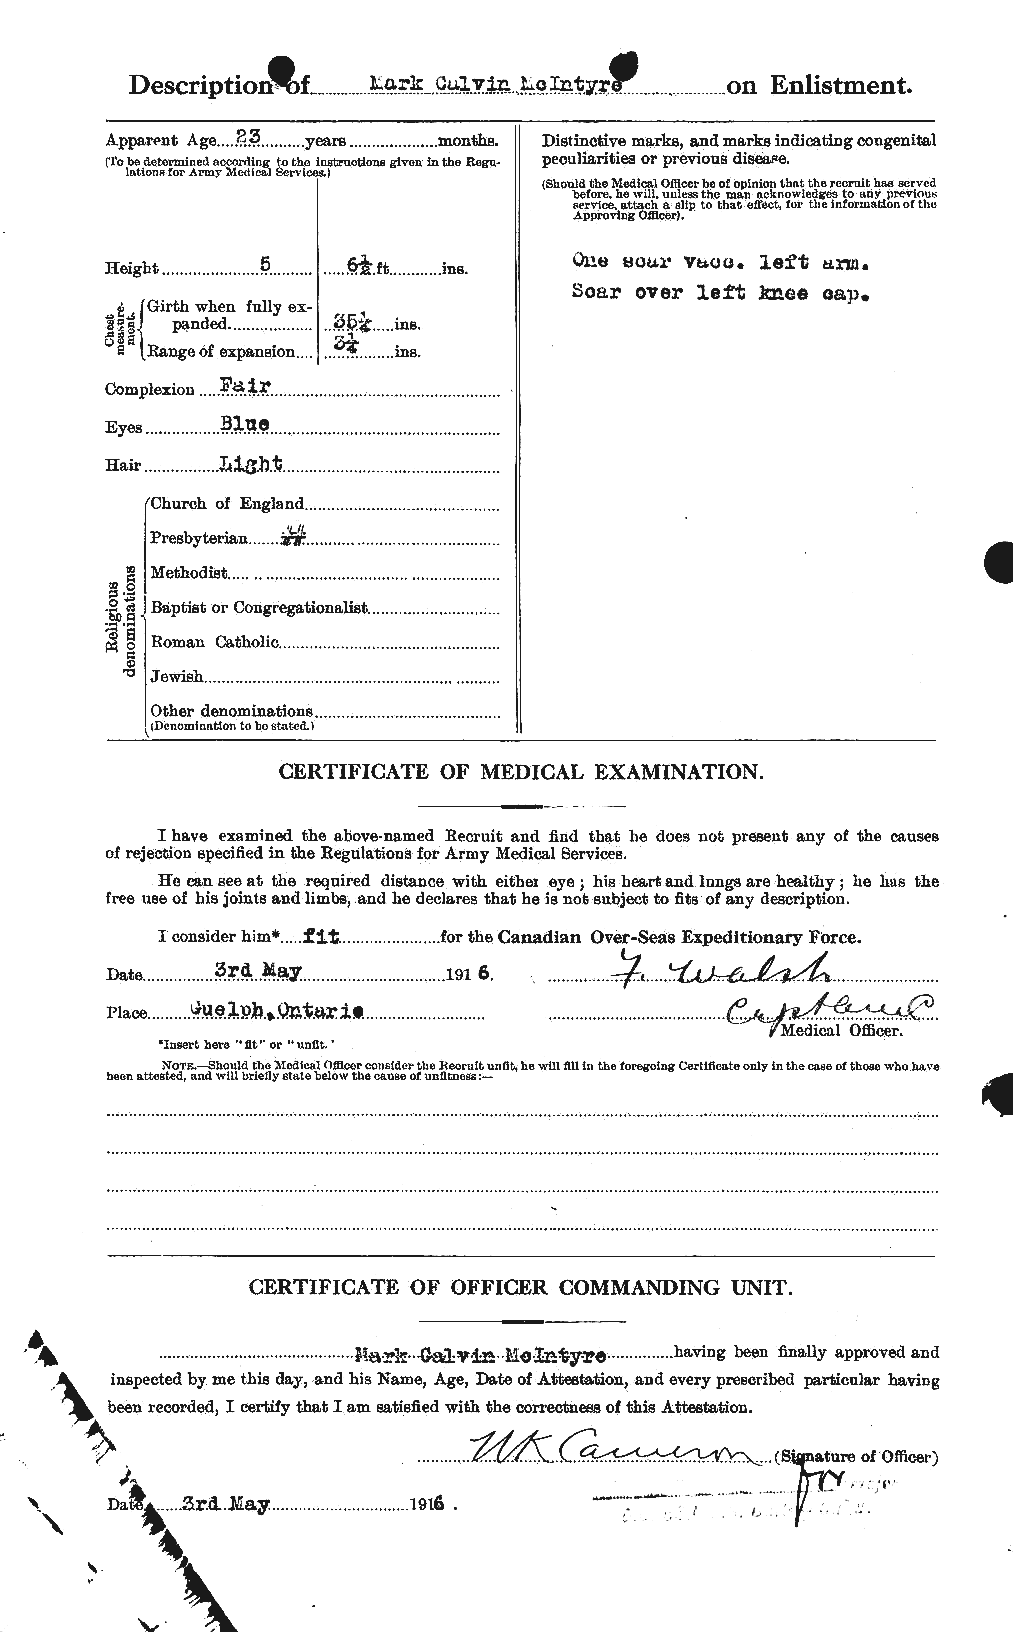 Dossiers du Personnel de la Première Guerre mondiale - CEC 527569b